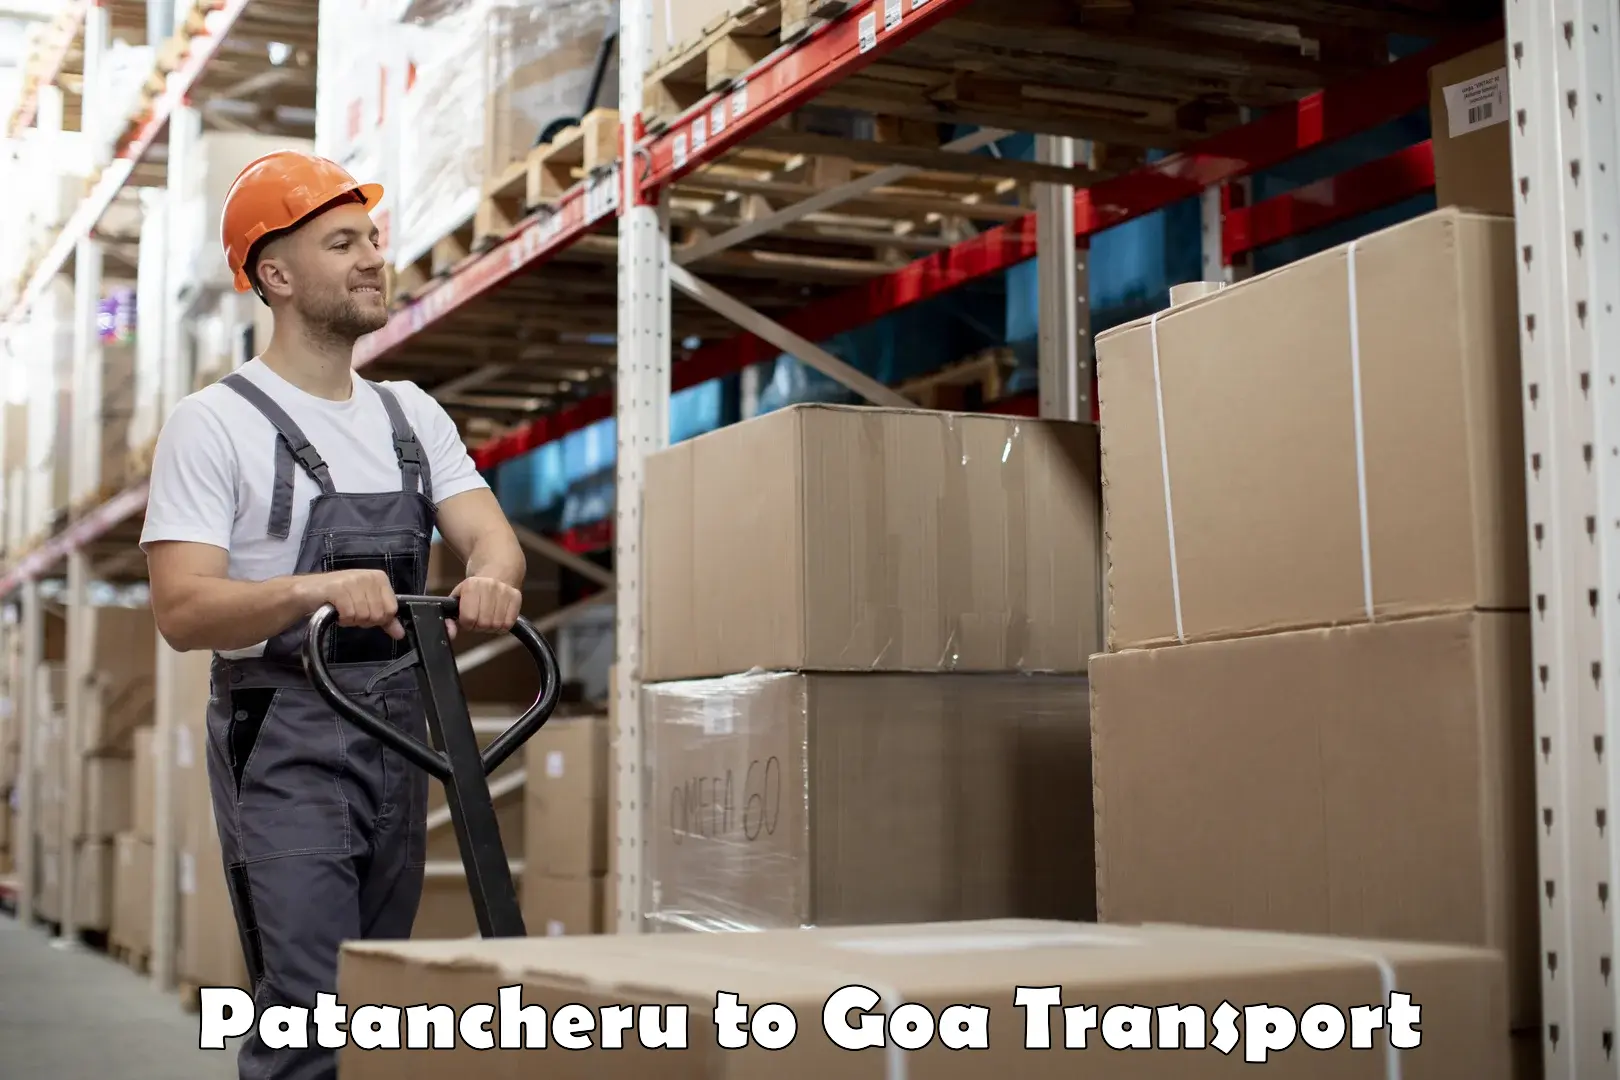 Cargo train transport services Patancheru to IIT Goa